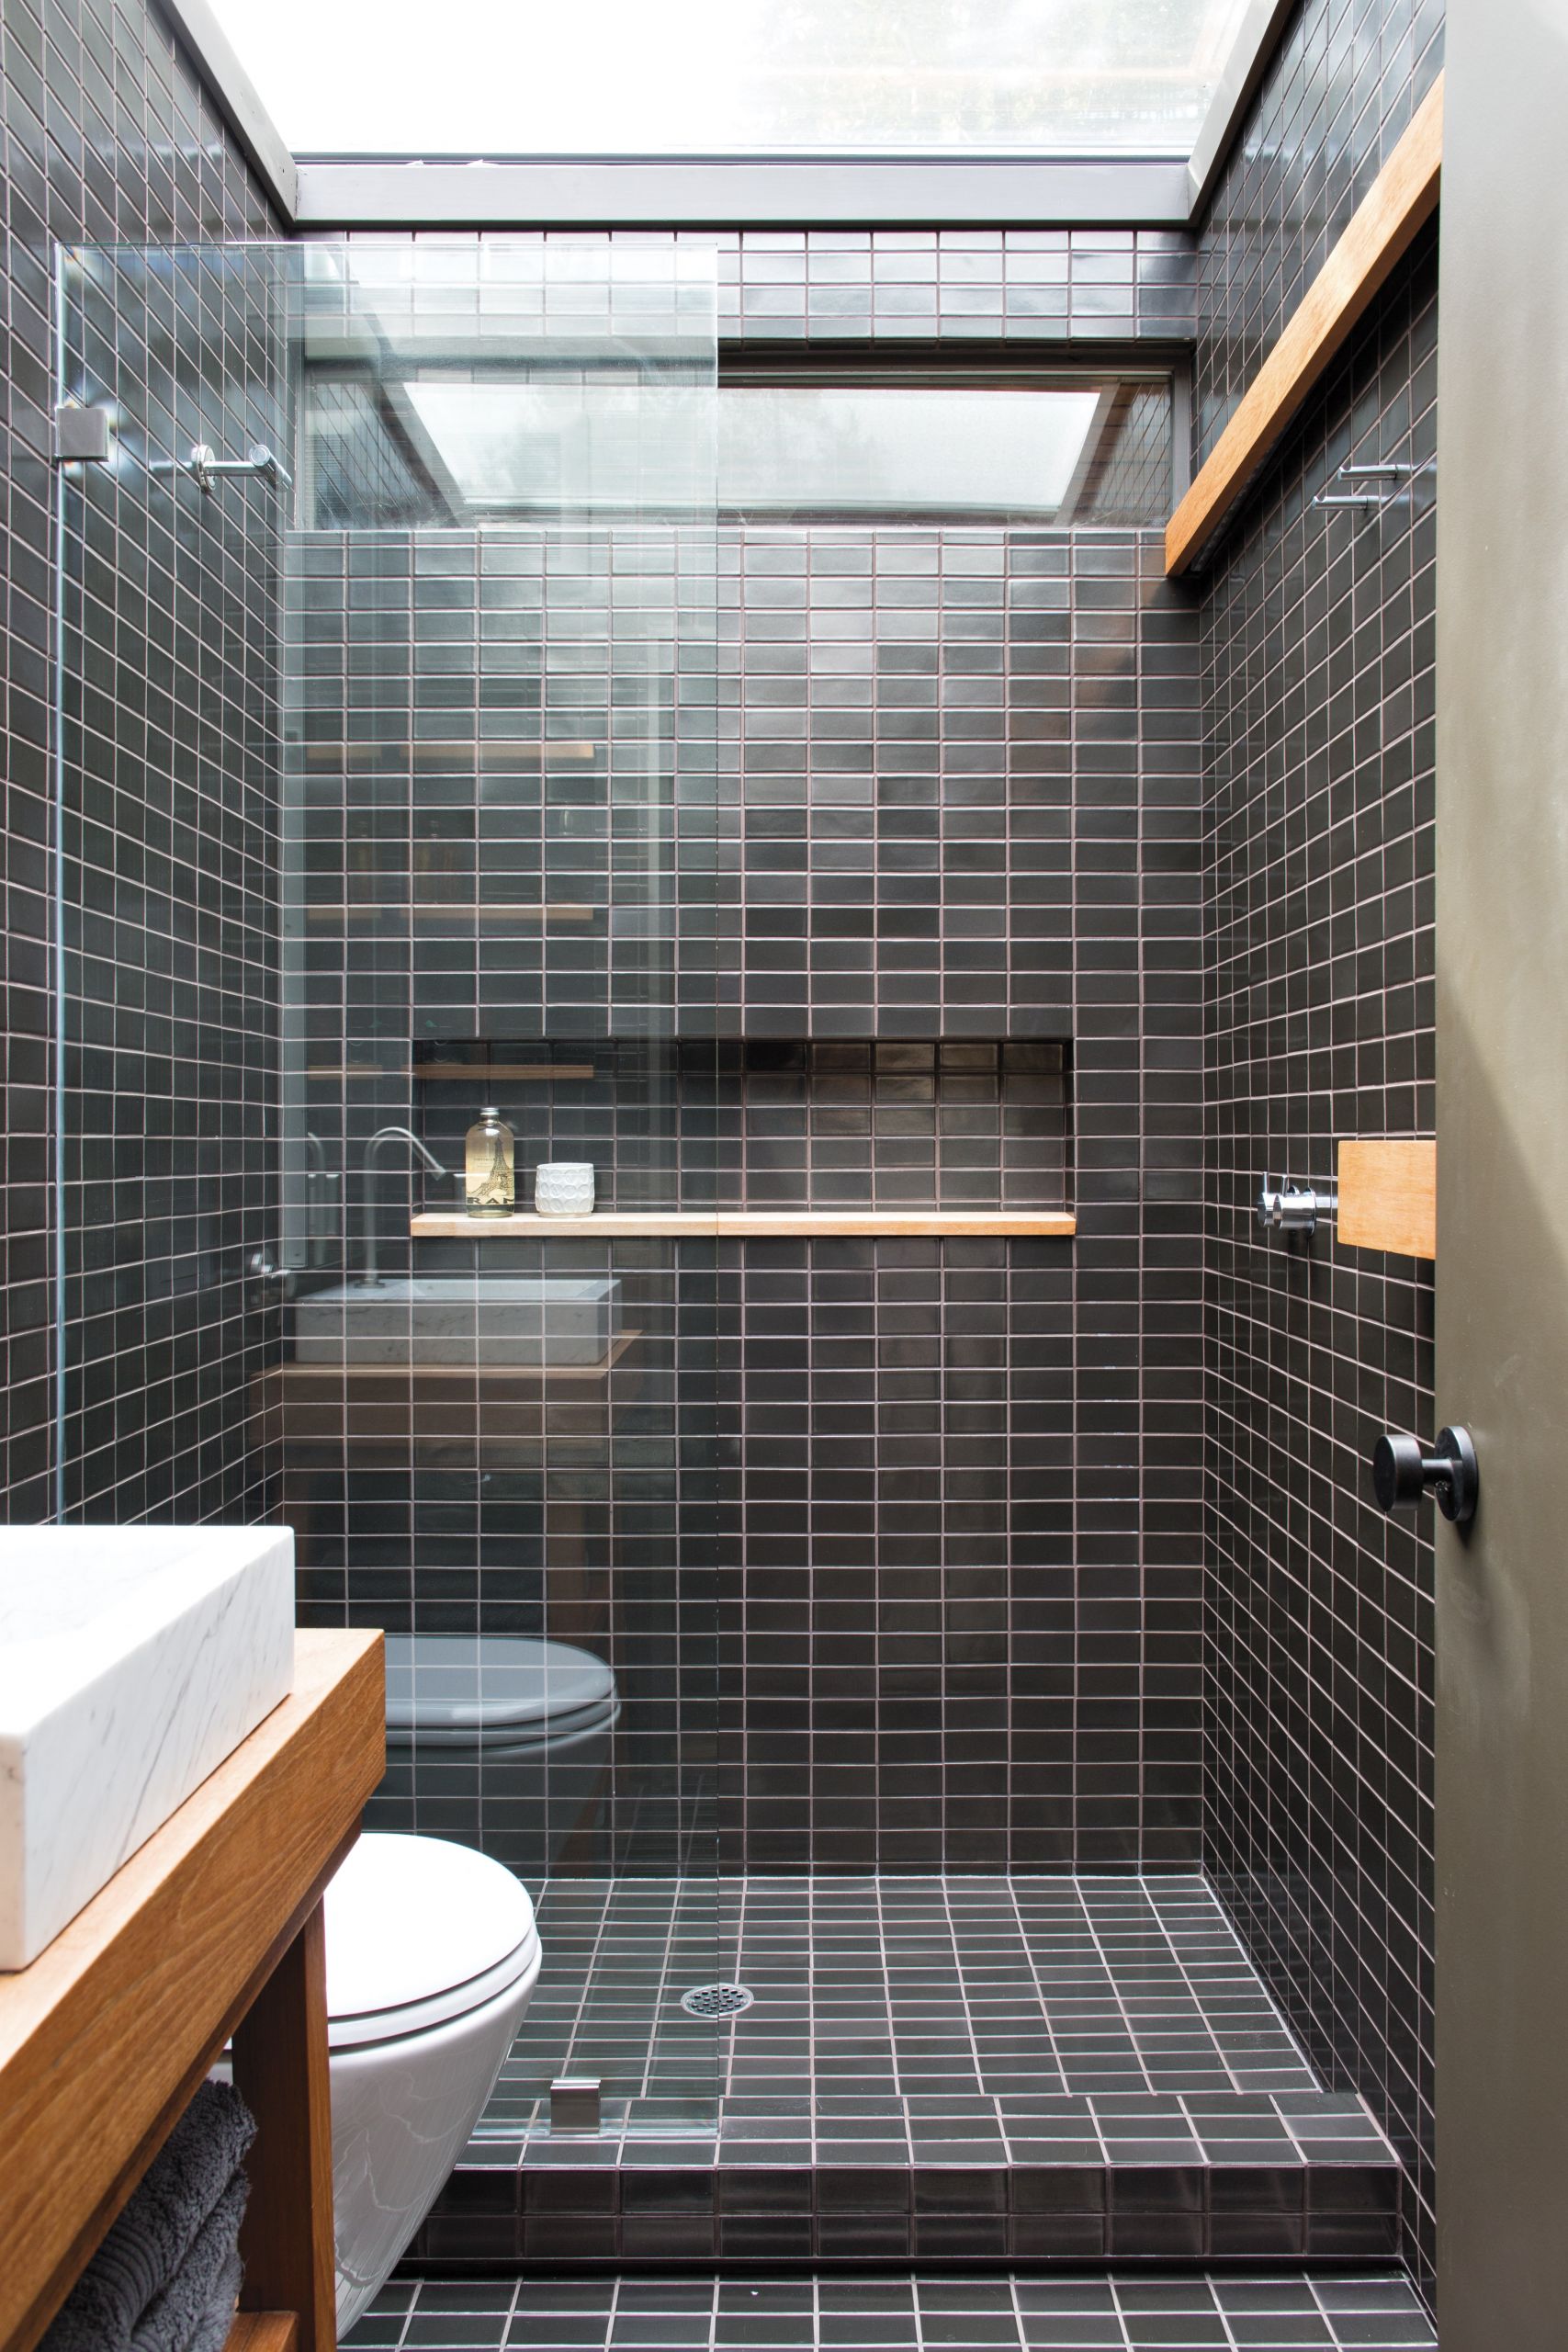 Tile Bathroom Ideas Photos
 How to Create the Bathroom Tile Design of Your Dreams